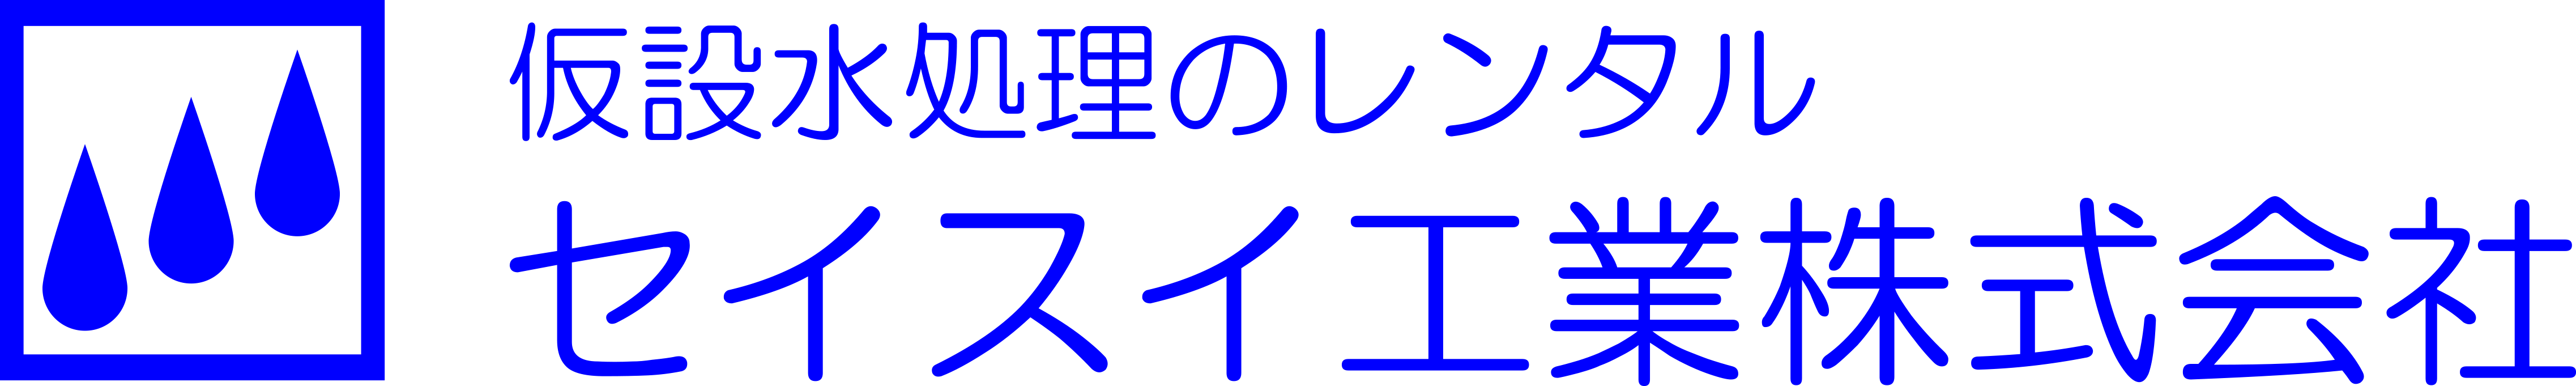 seisuikogyo-logo